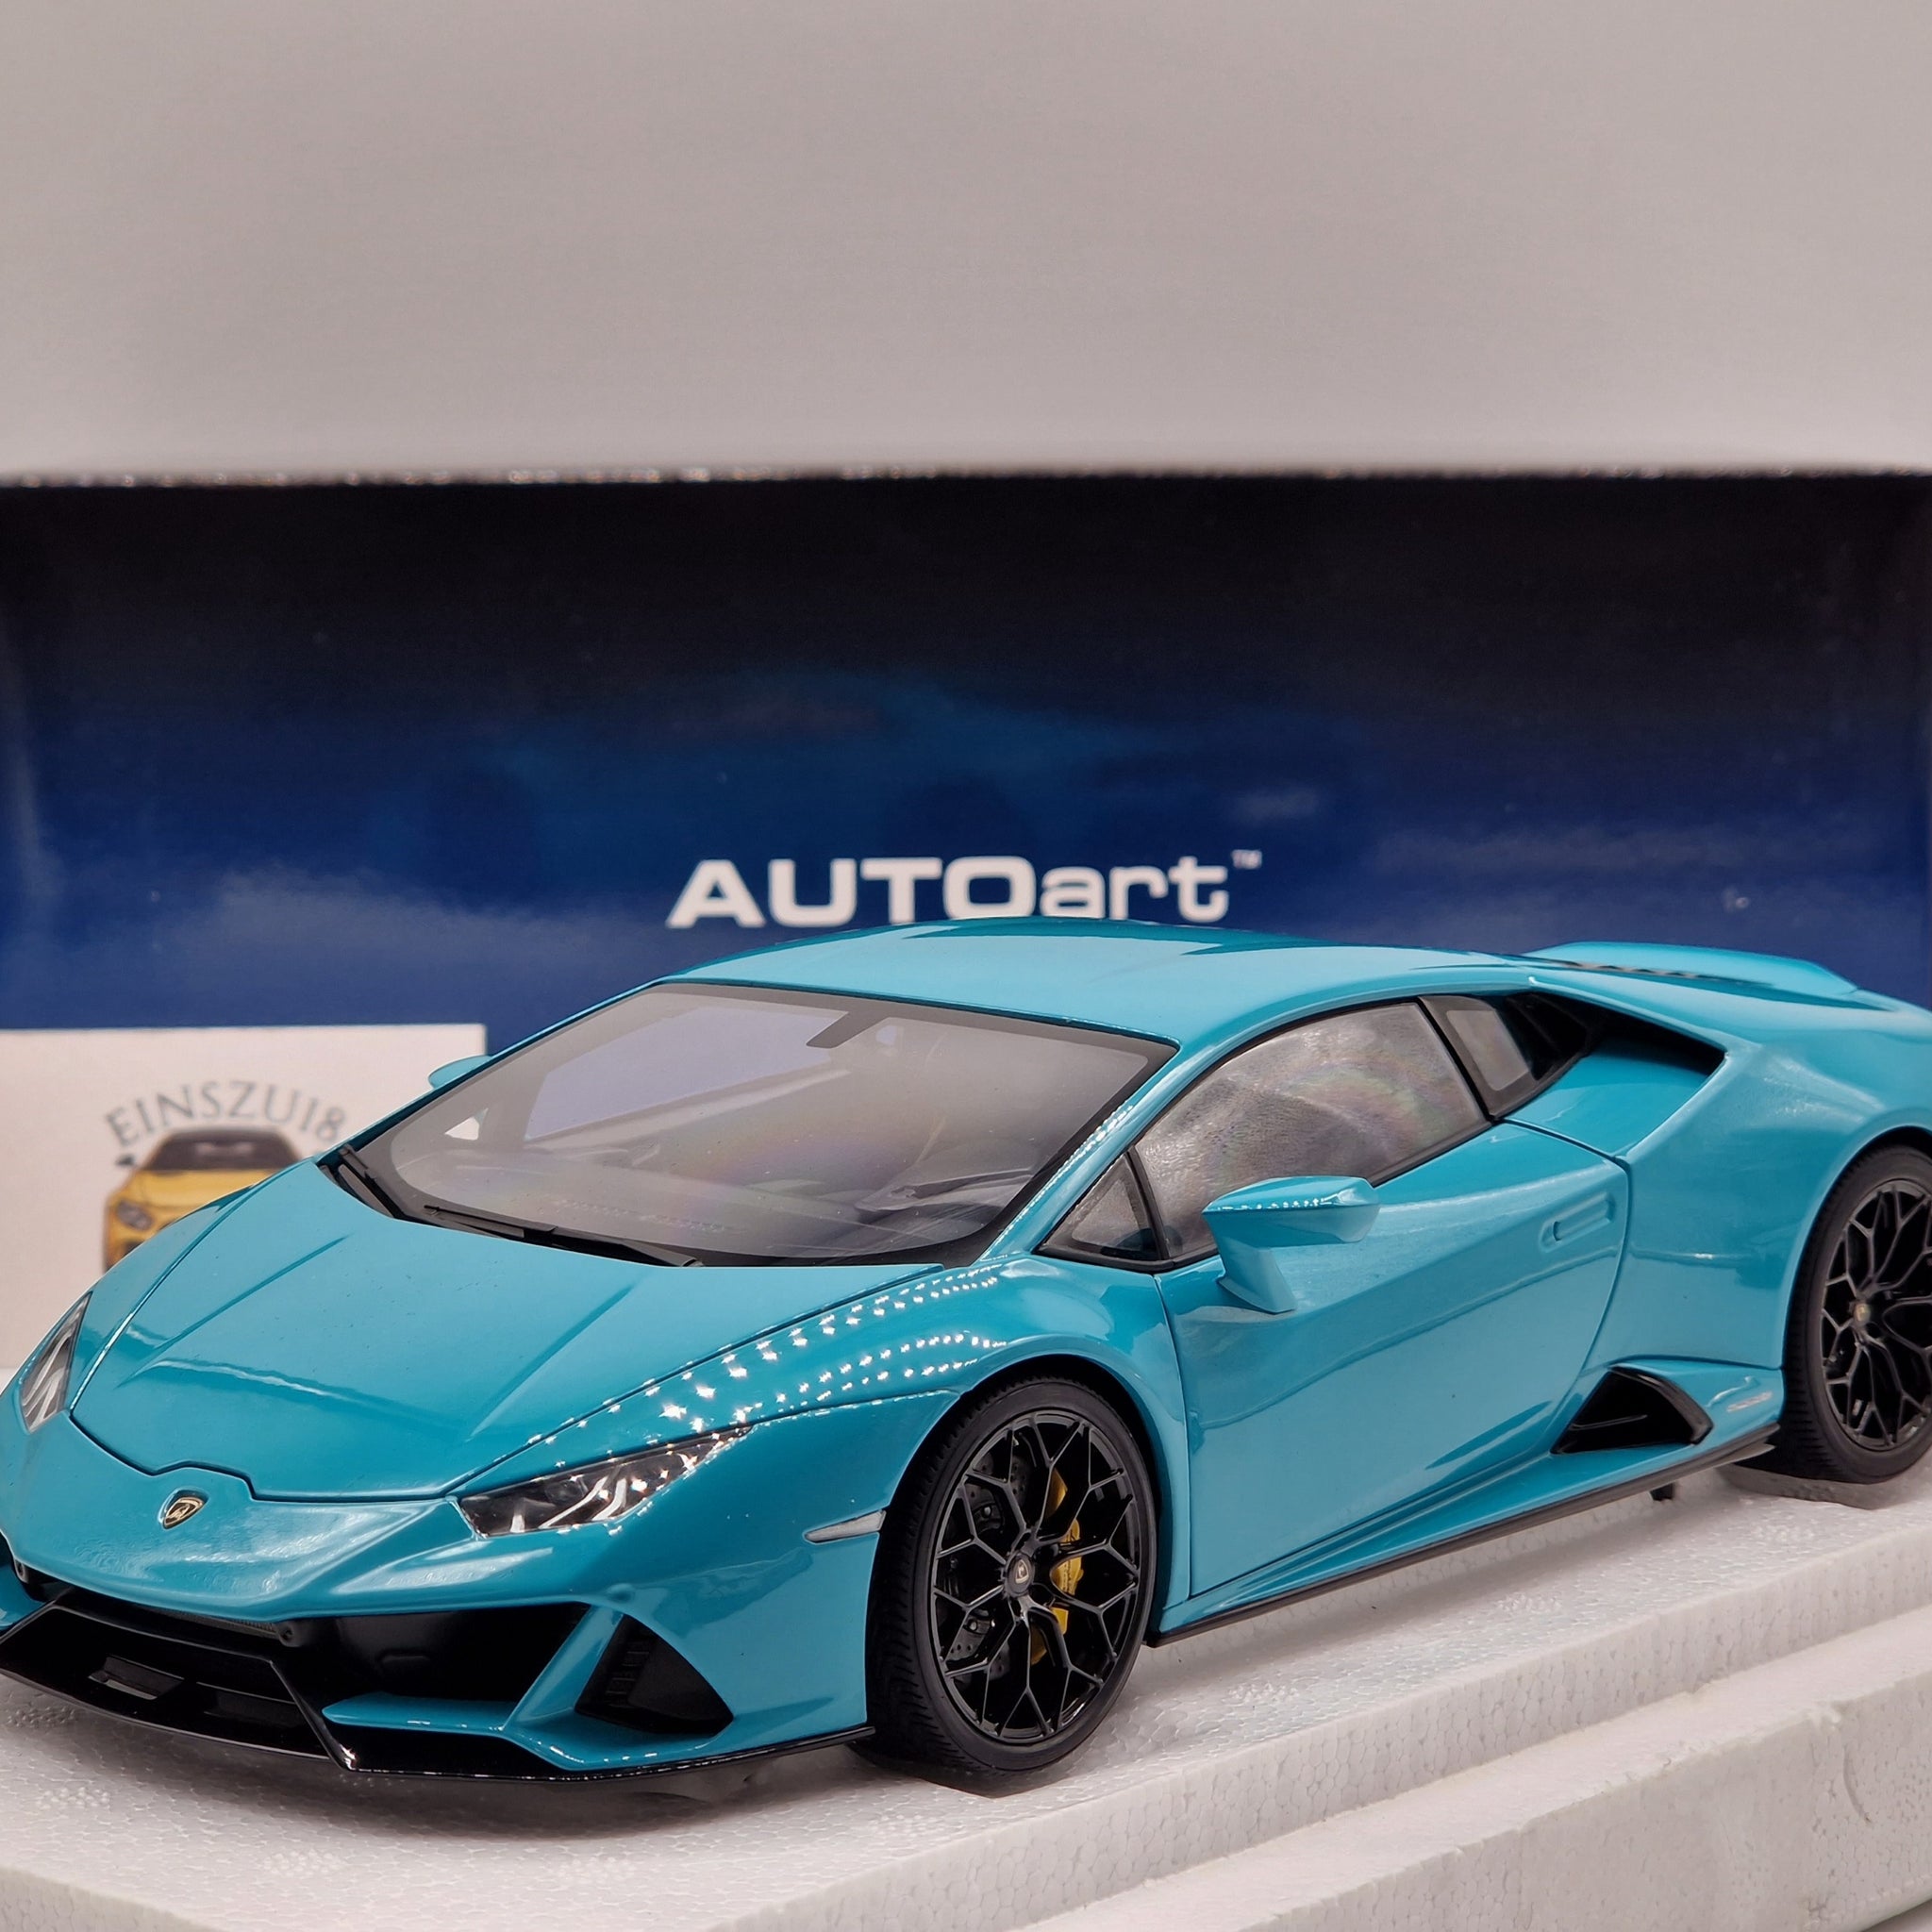 Lamborghini Huracan Evo Blu Glauco